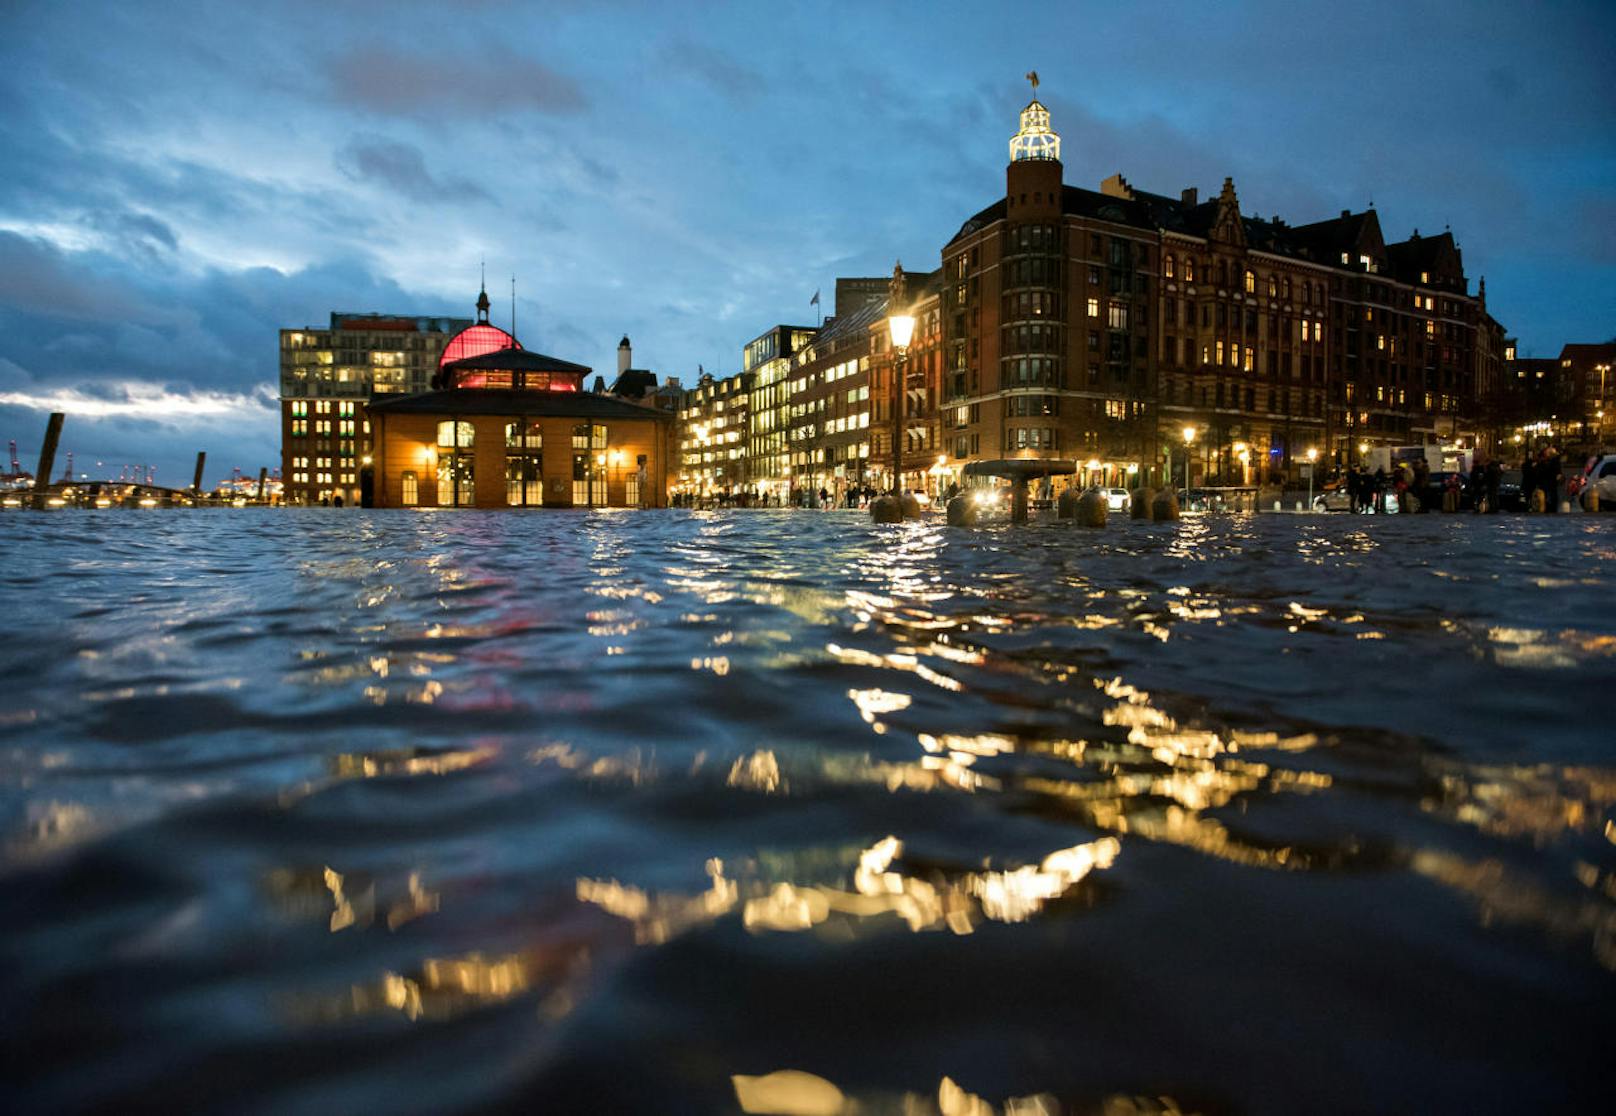 Der Fischmarkt mit der Fischauktionshalle in Hamburg stand am Dienstag während einer Sturmflut unter Wasser.